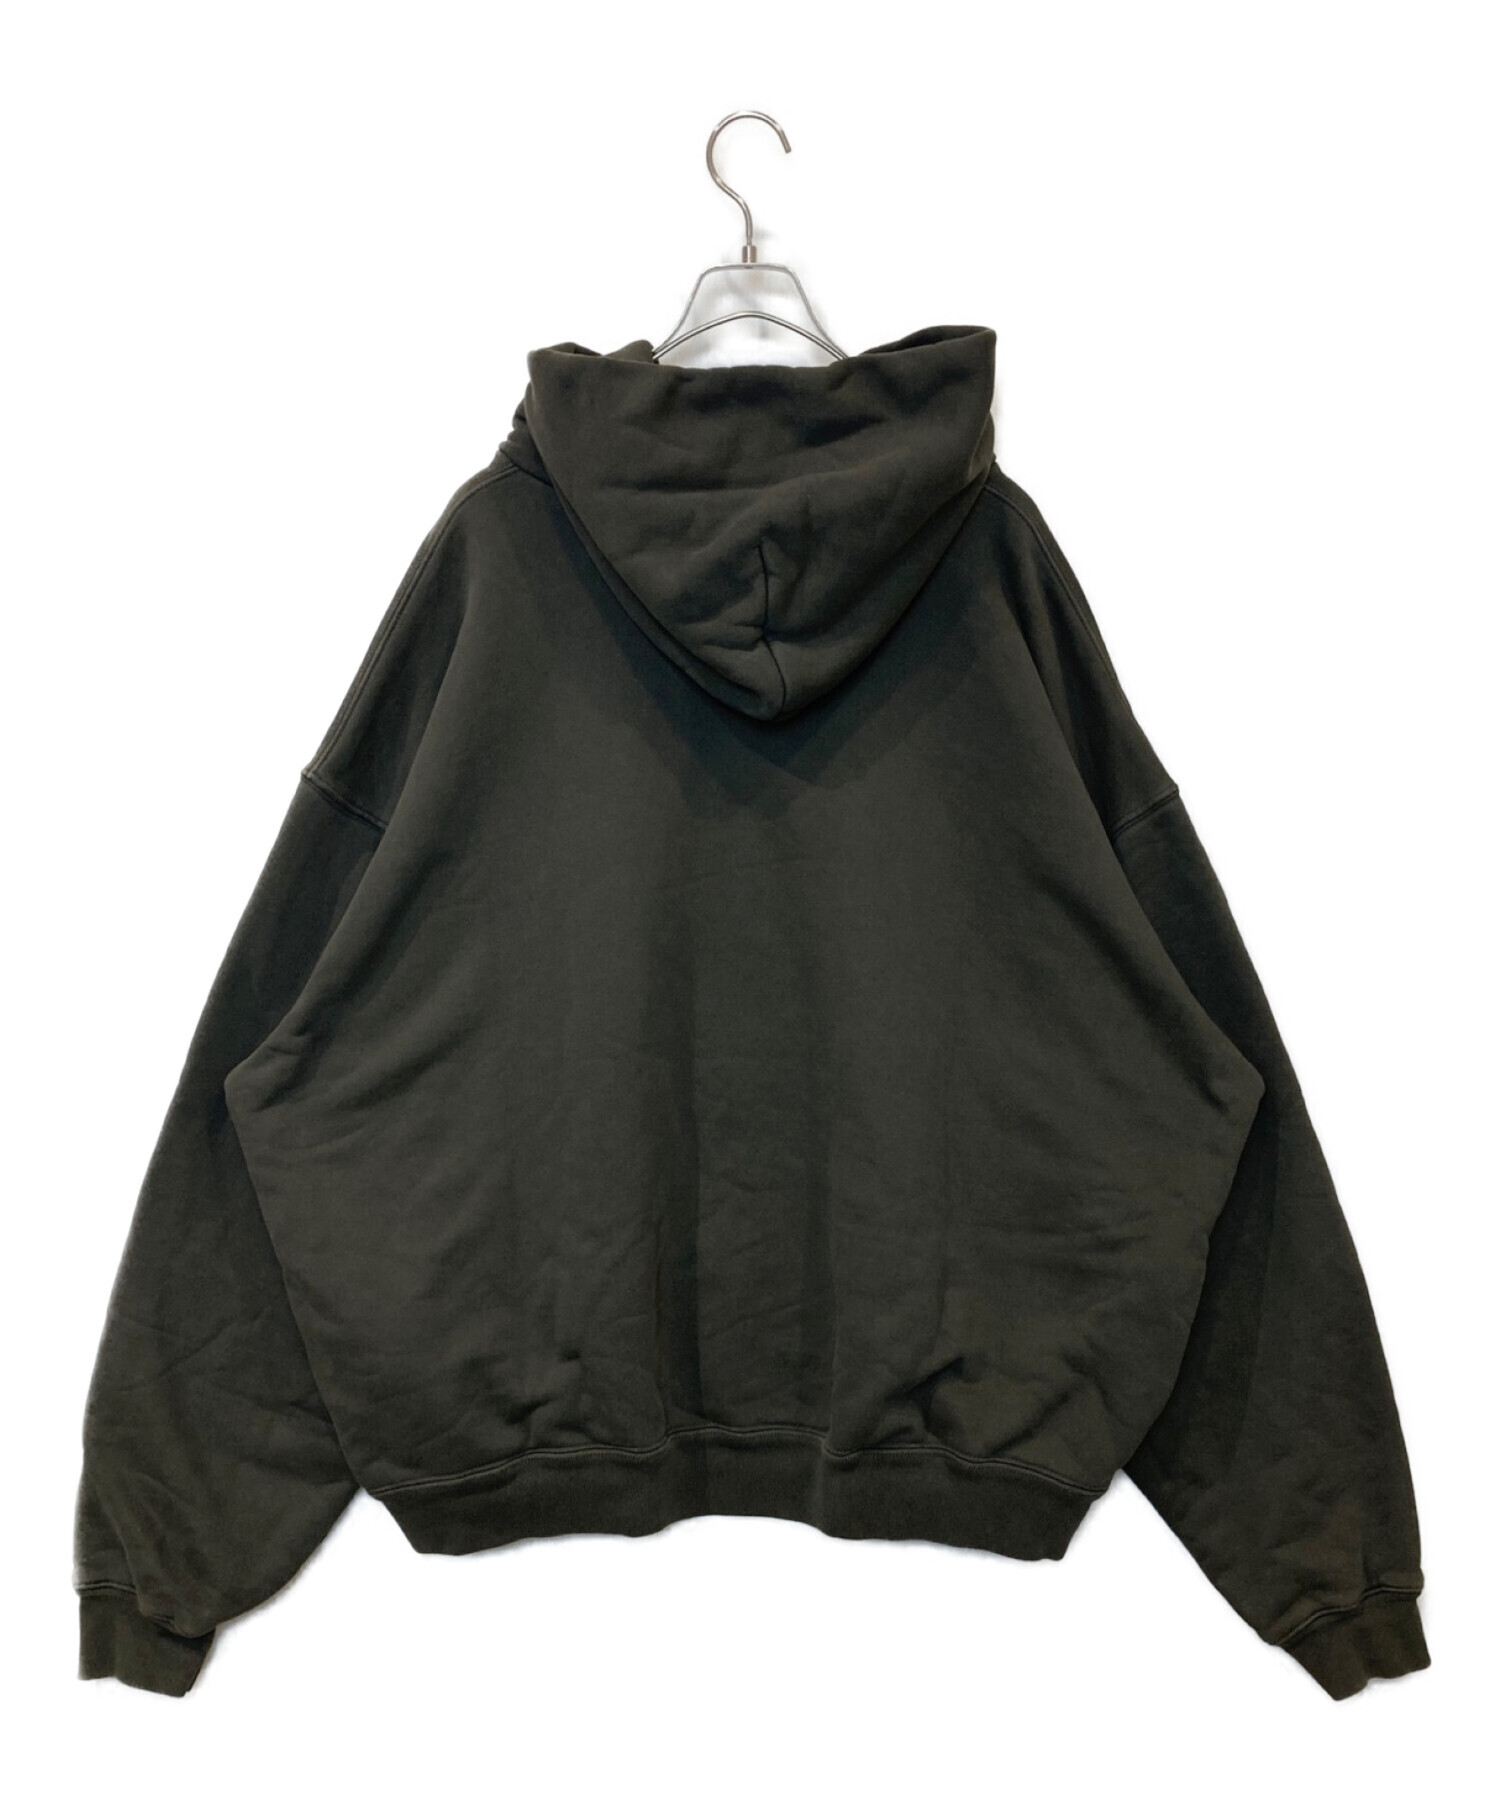 CPFM born again hoodie Black XL 黒